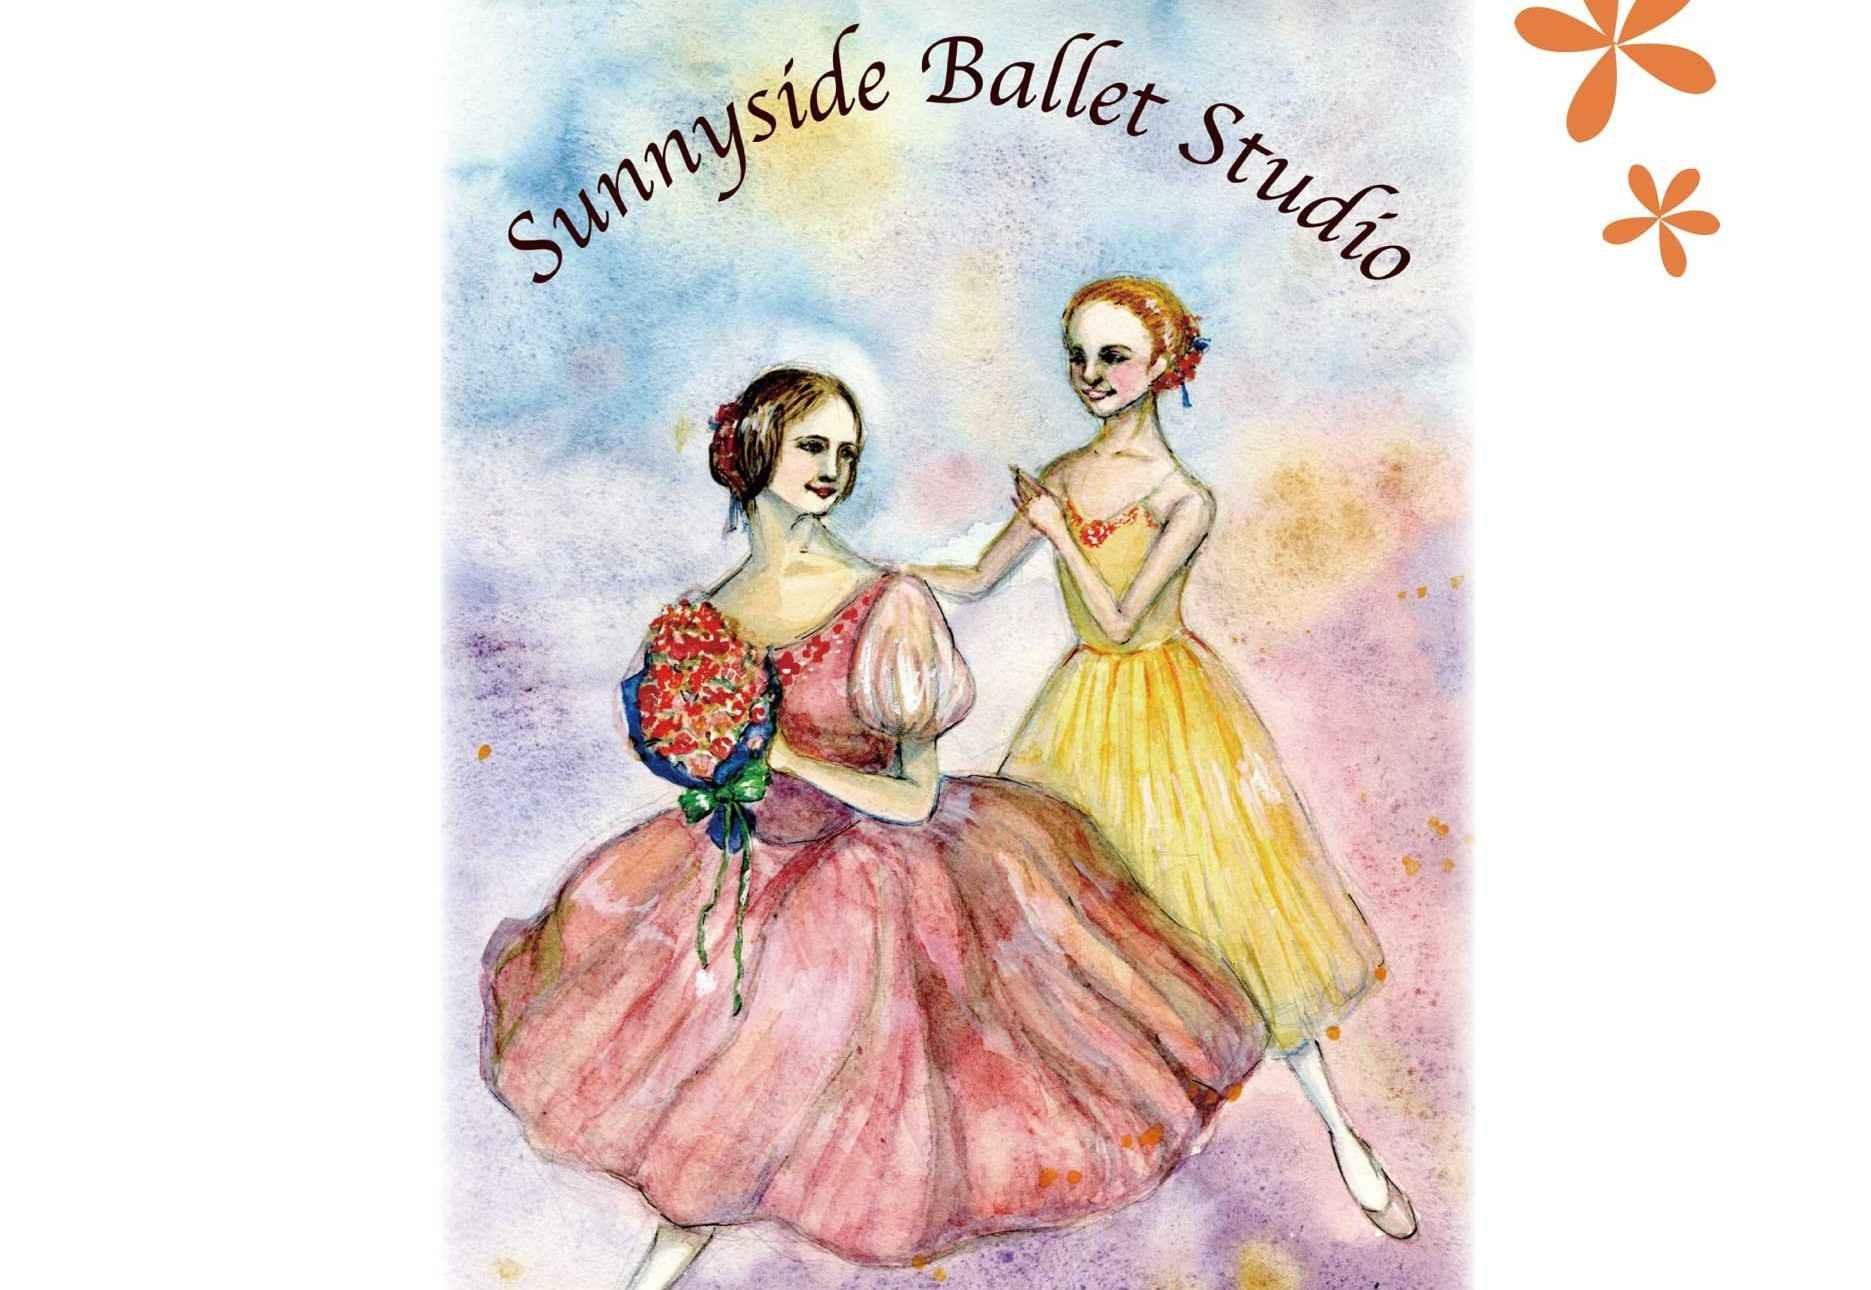 Sunnyside Ballet Studio